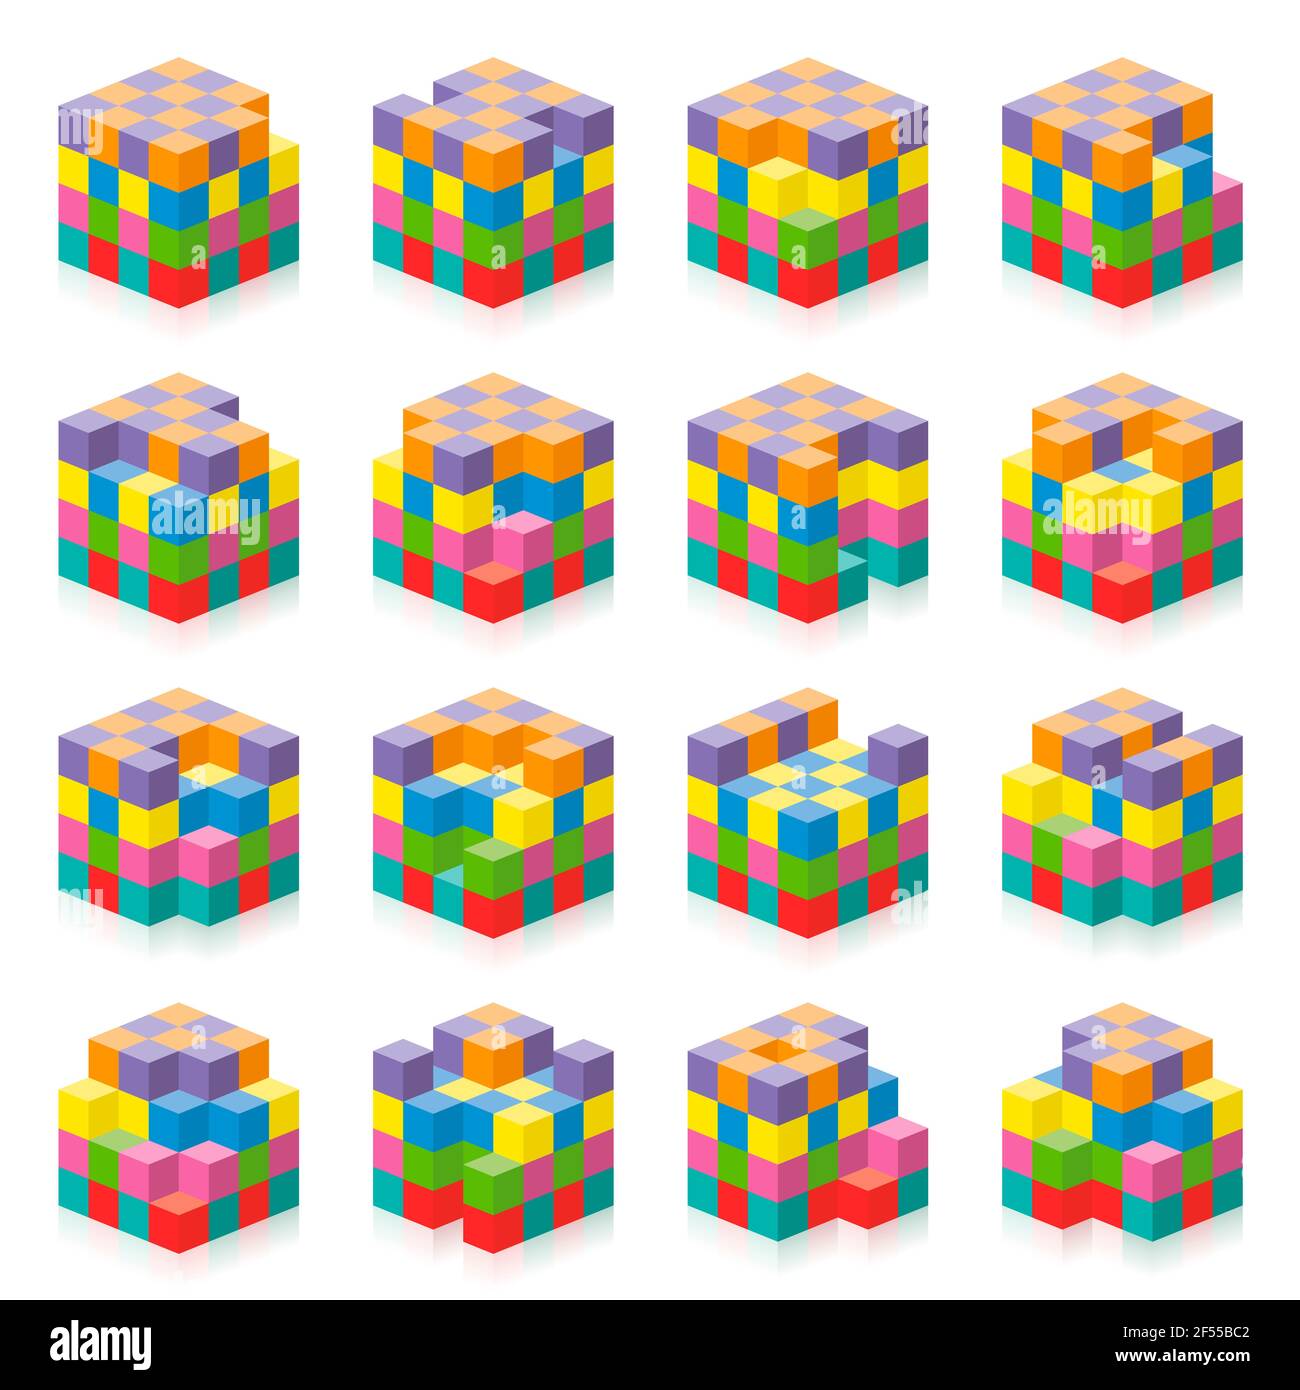 Cubo con cubi mancanti da 1 a 16. Esercizio di percezione spaziale tridimensionale. Gioco colorato per contare lacune, buchi, spazi vuoti. Foto Stock